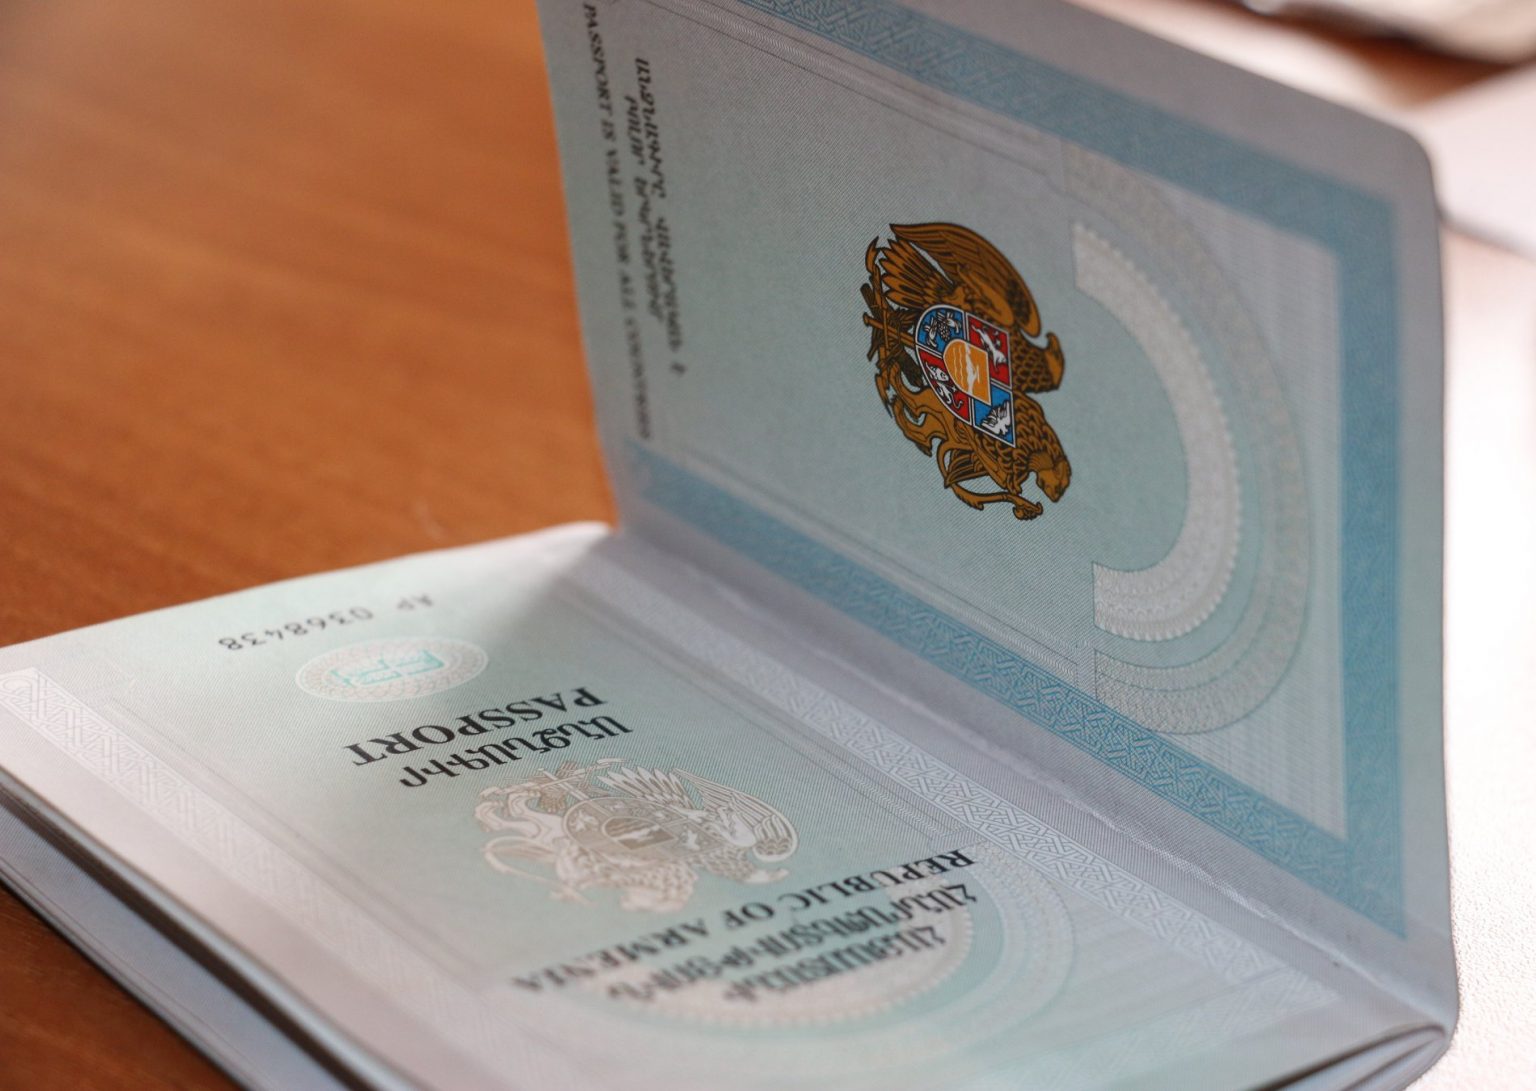 ՀՀ քաղաքացու անձնագրերի տպագրության գործընթացում բարդություններ կան. ՌԴ-ում ՀՀ դեսպանատուն